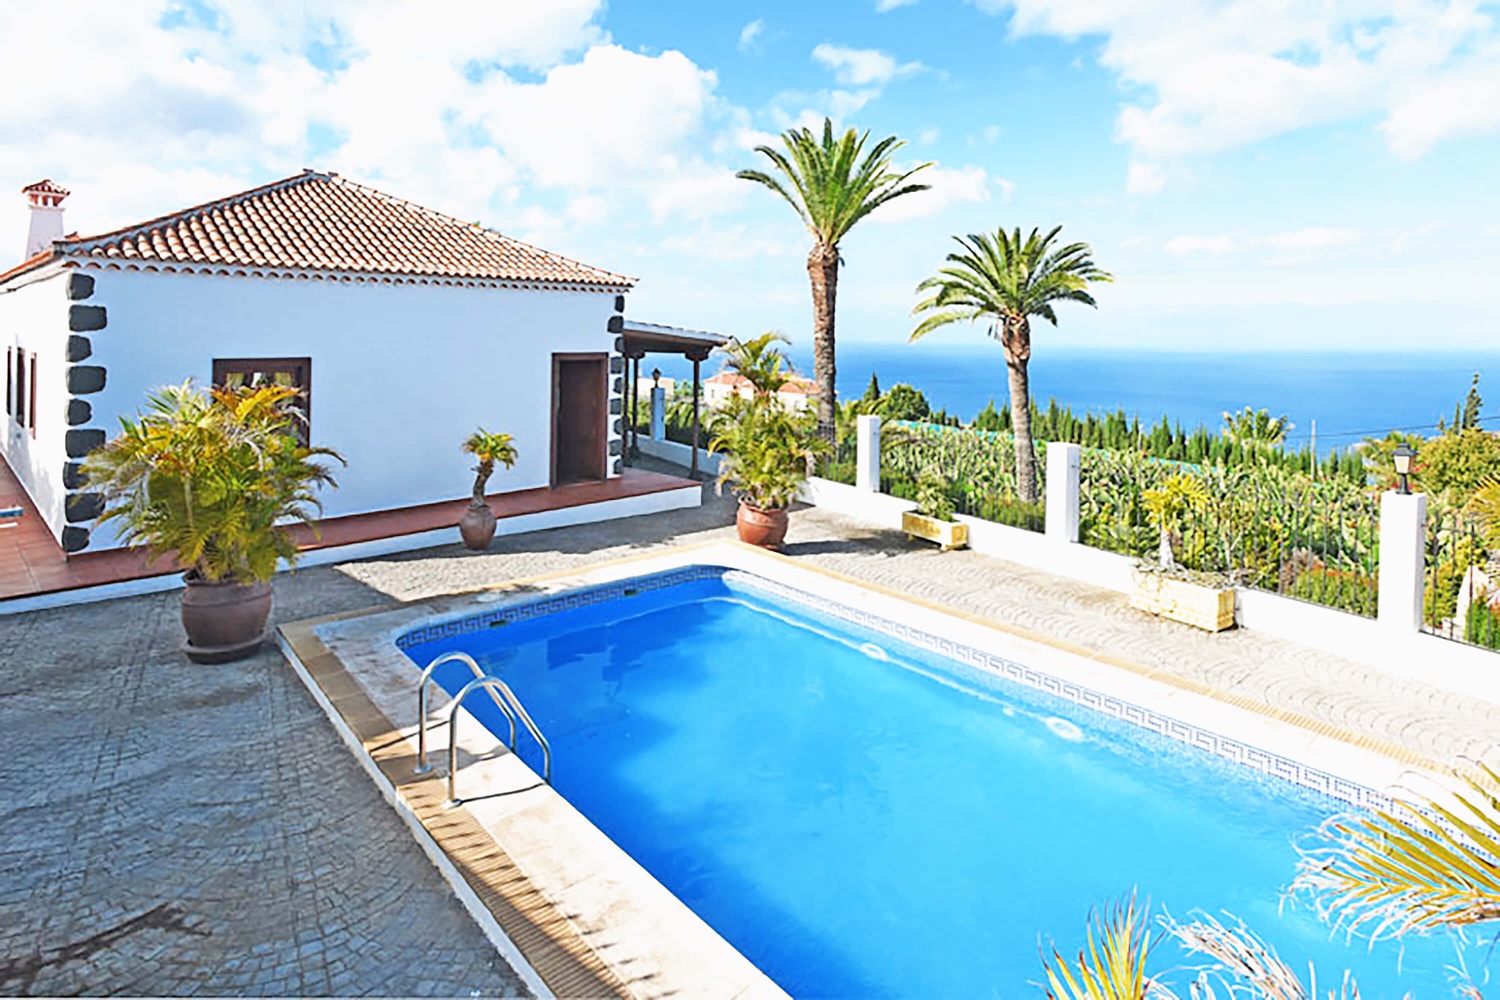 Elegantes, von Palmen umgebenes Ferienhaus mit großem Außenbereich, privatem Pool und hervorragendem Meerblick